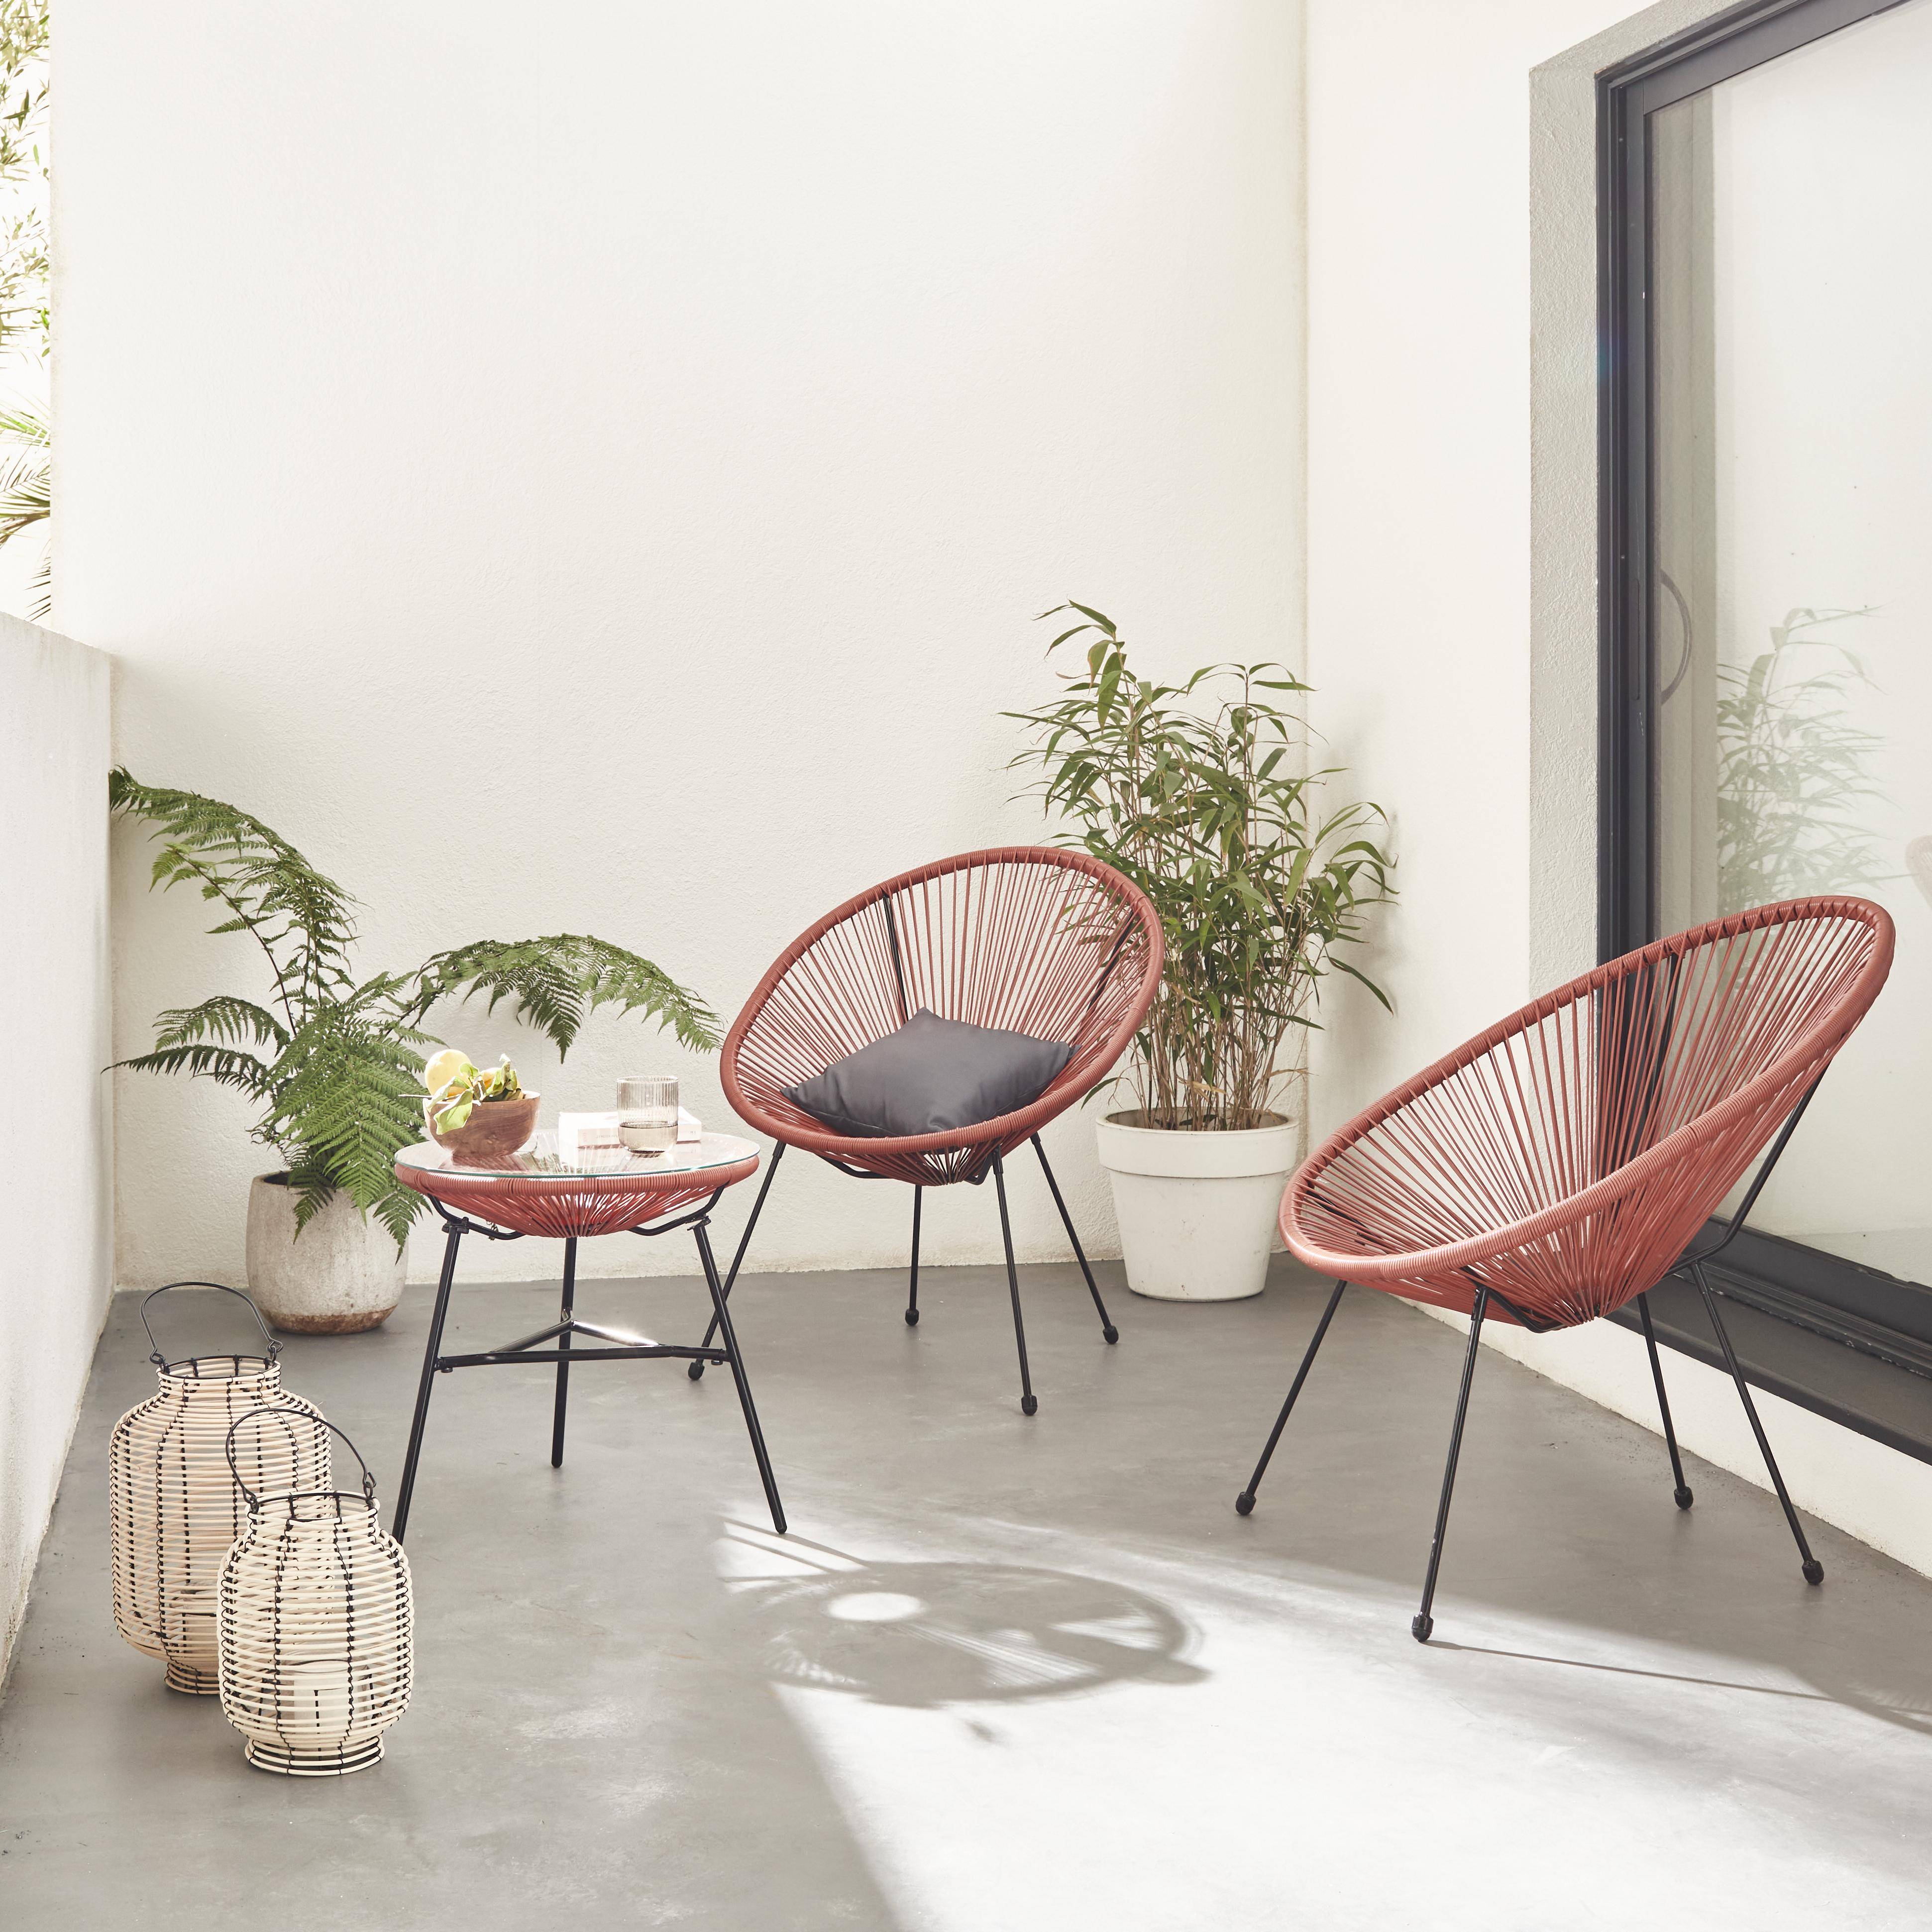 Set van 2 ei-vormige stoelen ACAPULCO met bijzettafel -Terra Cotta- Stoelen 4 poten design retro, met lage tafel, plastic koorden Photo1